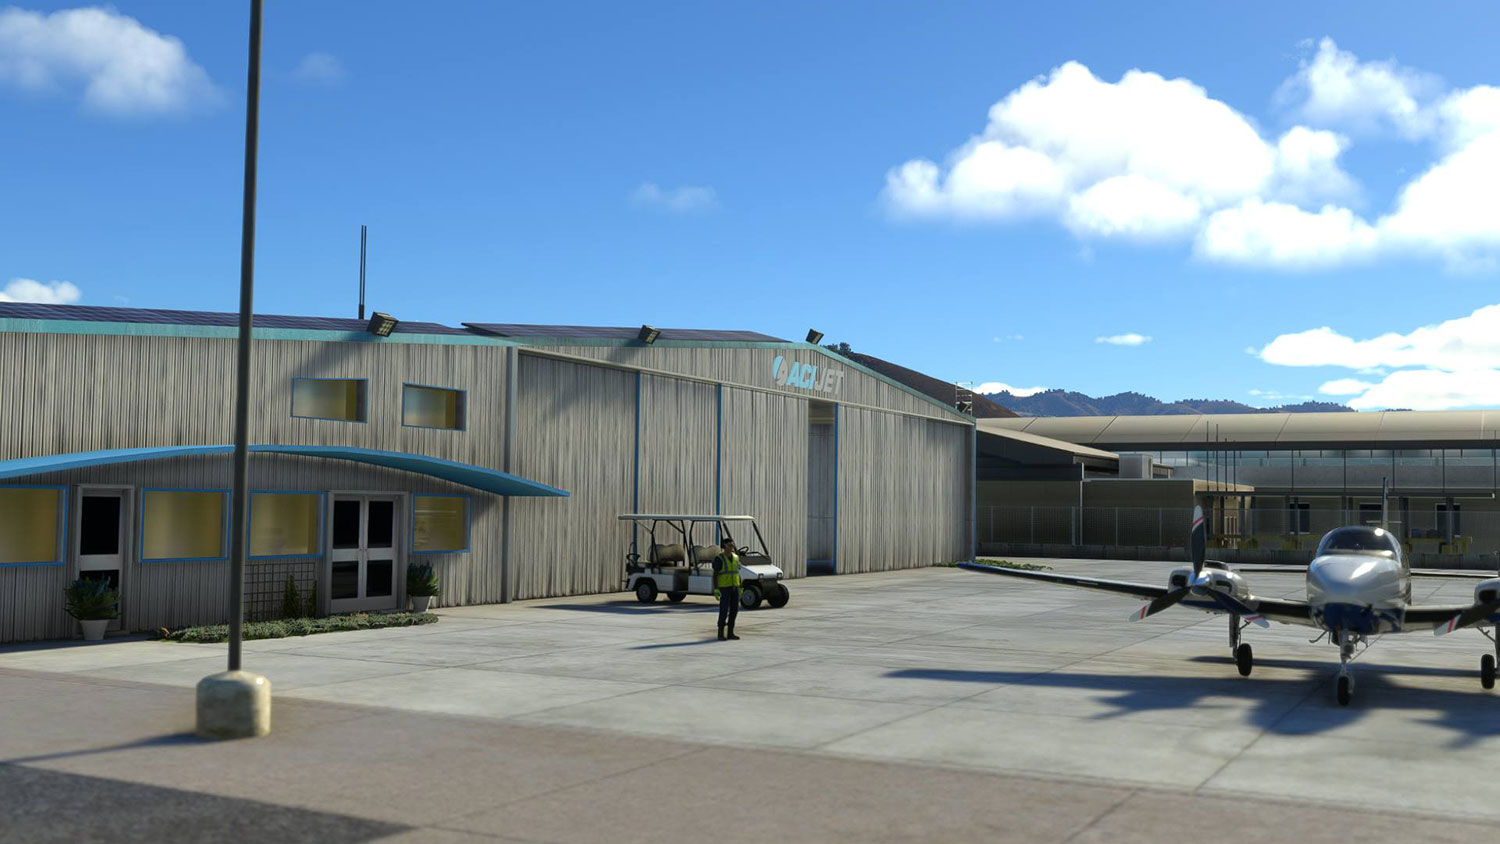 Just Flight - KSBP - San Luis Obispo Regional Airport MSFS